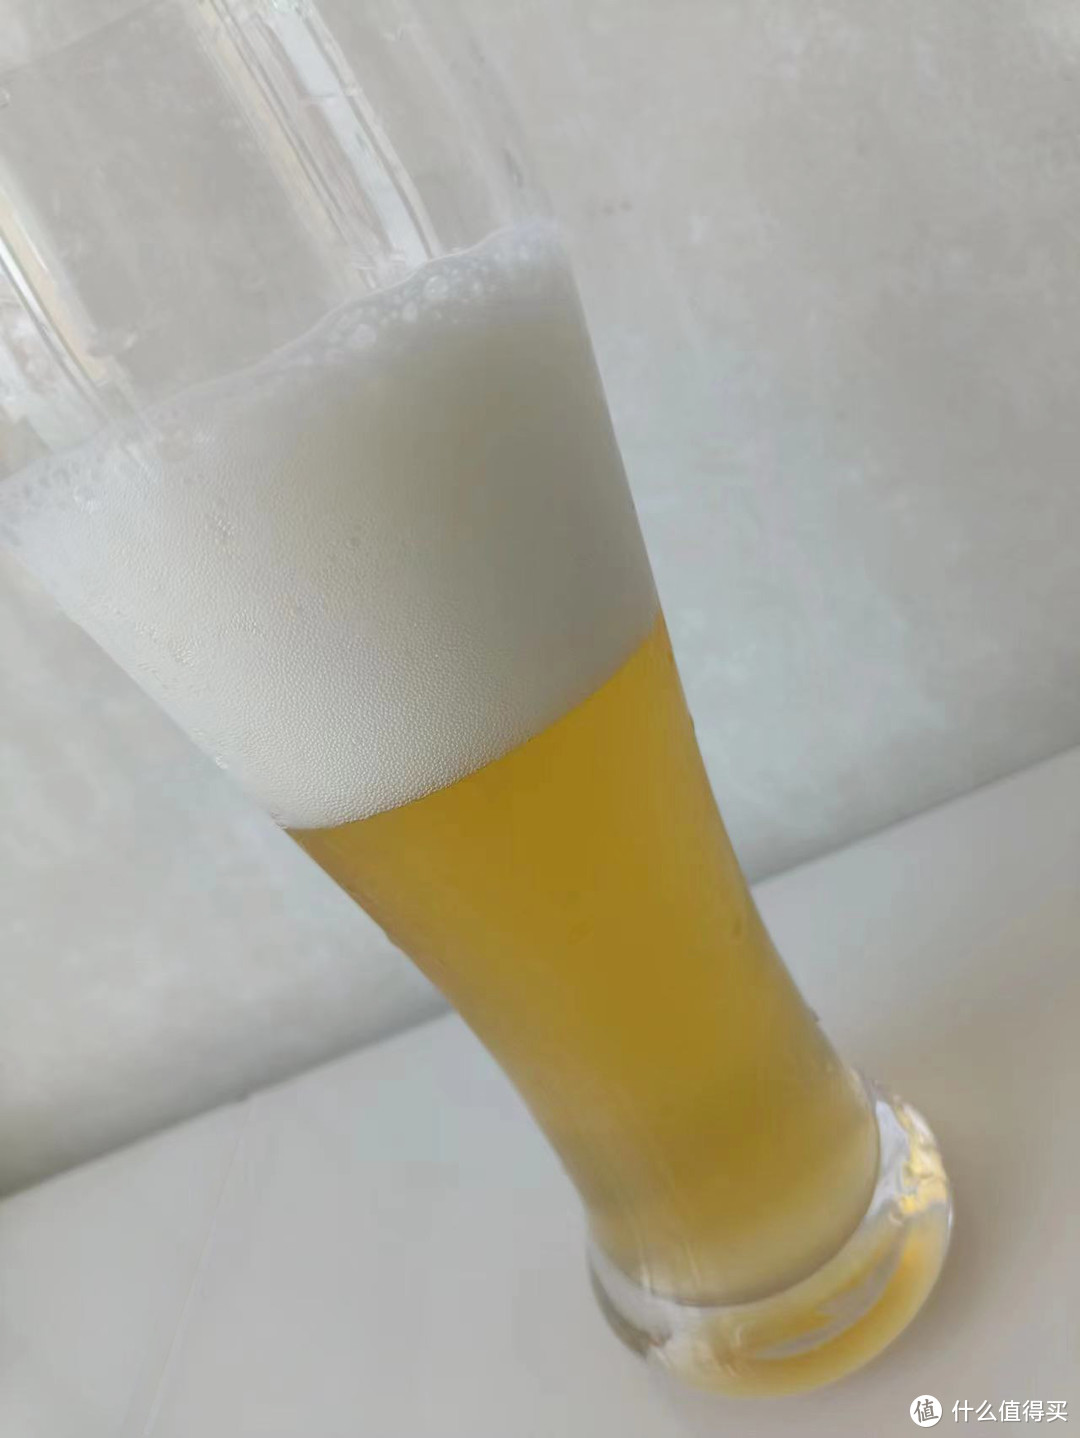 拜仁巴赫-芒果精酿啤酒，一款适合女生聚餐时喝的啤酒，口感清爽香甜。